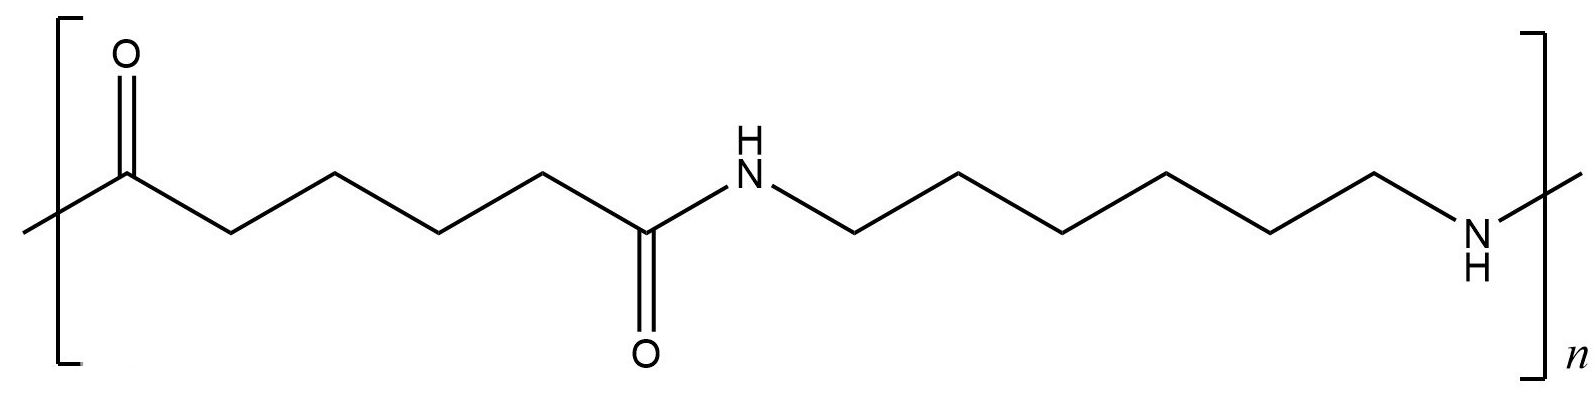 聚酰胺 66_1595_393